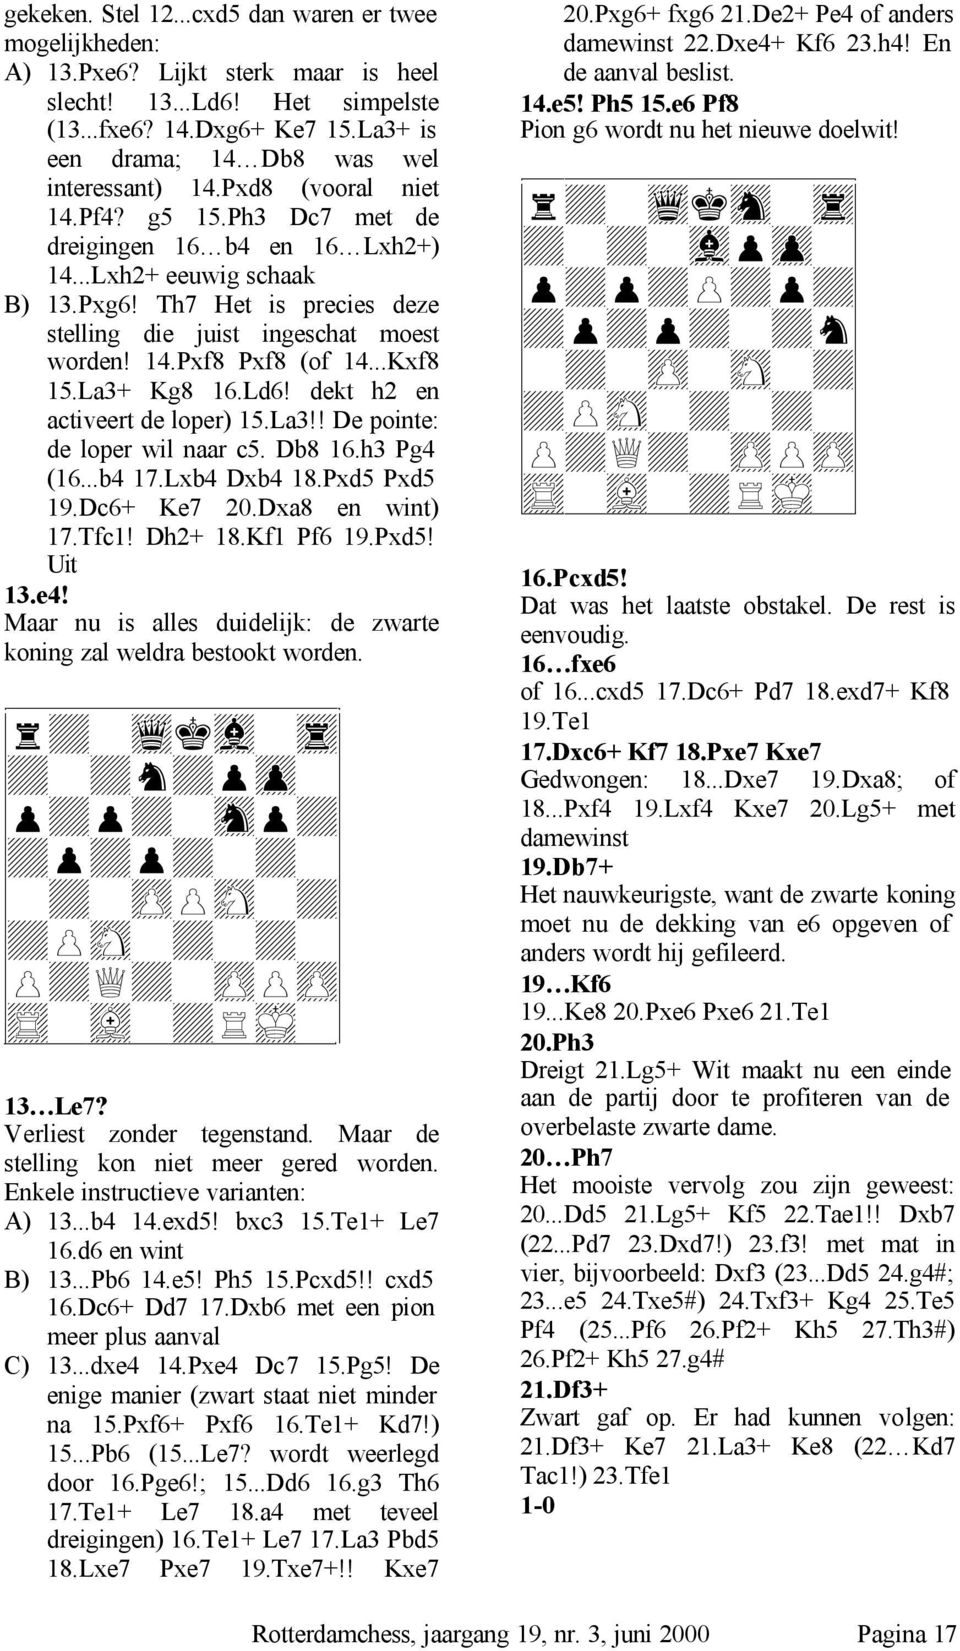 Th7 Het is precies deze stelling die juist ingeschat moest worden! 14.Pxf8 Pxf8 (of 14...Kxf8 15.La3+ Kg8 16.Ld6! dekt h2 en activeert de loper) 15.La3!! De pointe: de loper wil naar c5. Db8 16.